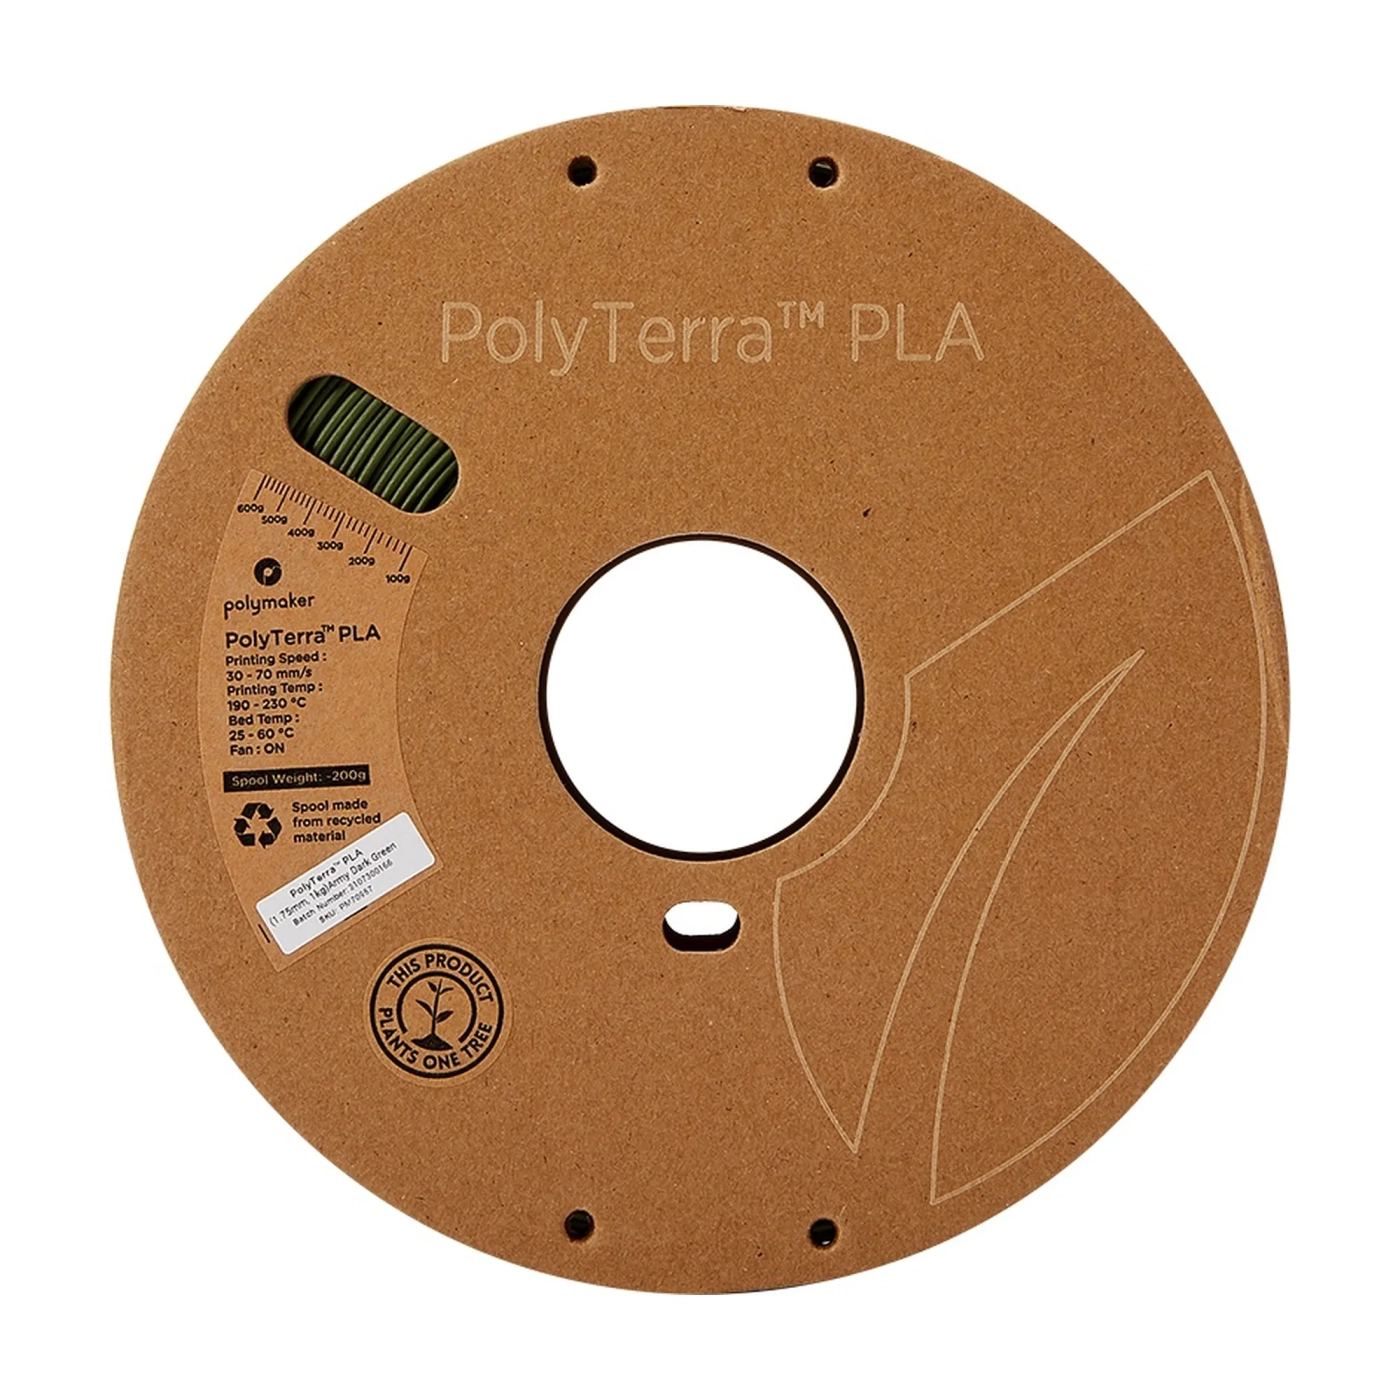 Купить PolyTerra PLA Filament (пластик) для 3D принтера Polymaker 1кг, 1.75мм, армейский темно-зеленый - фото 3